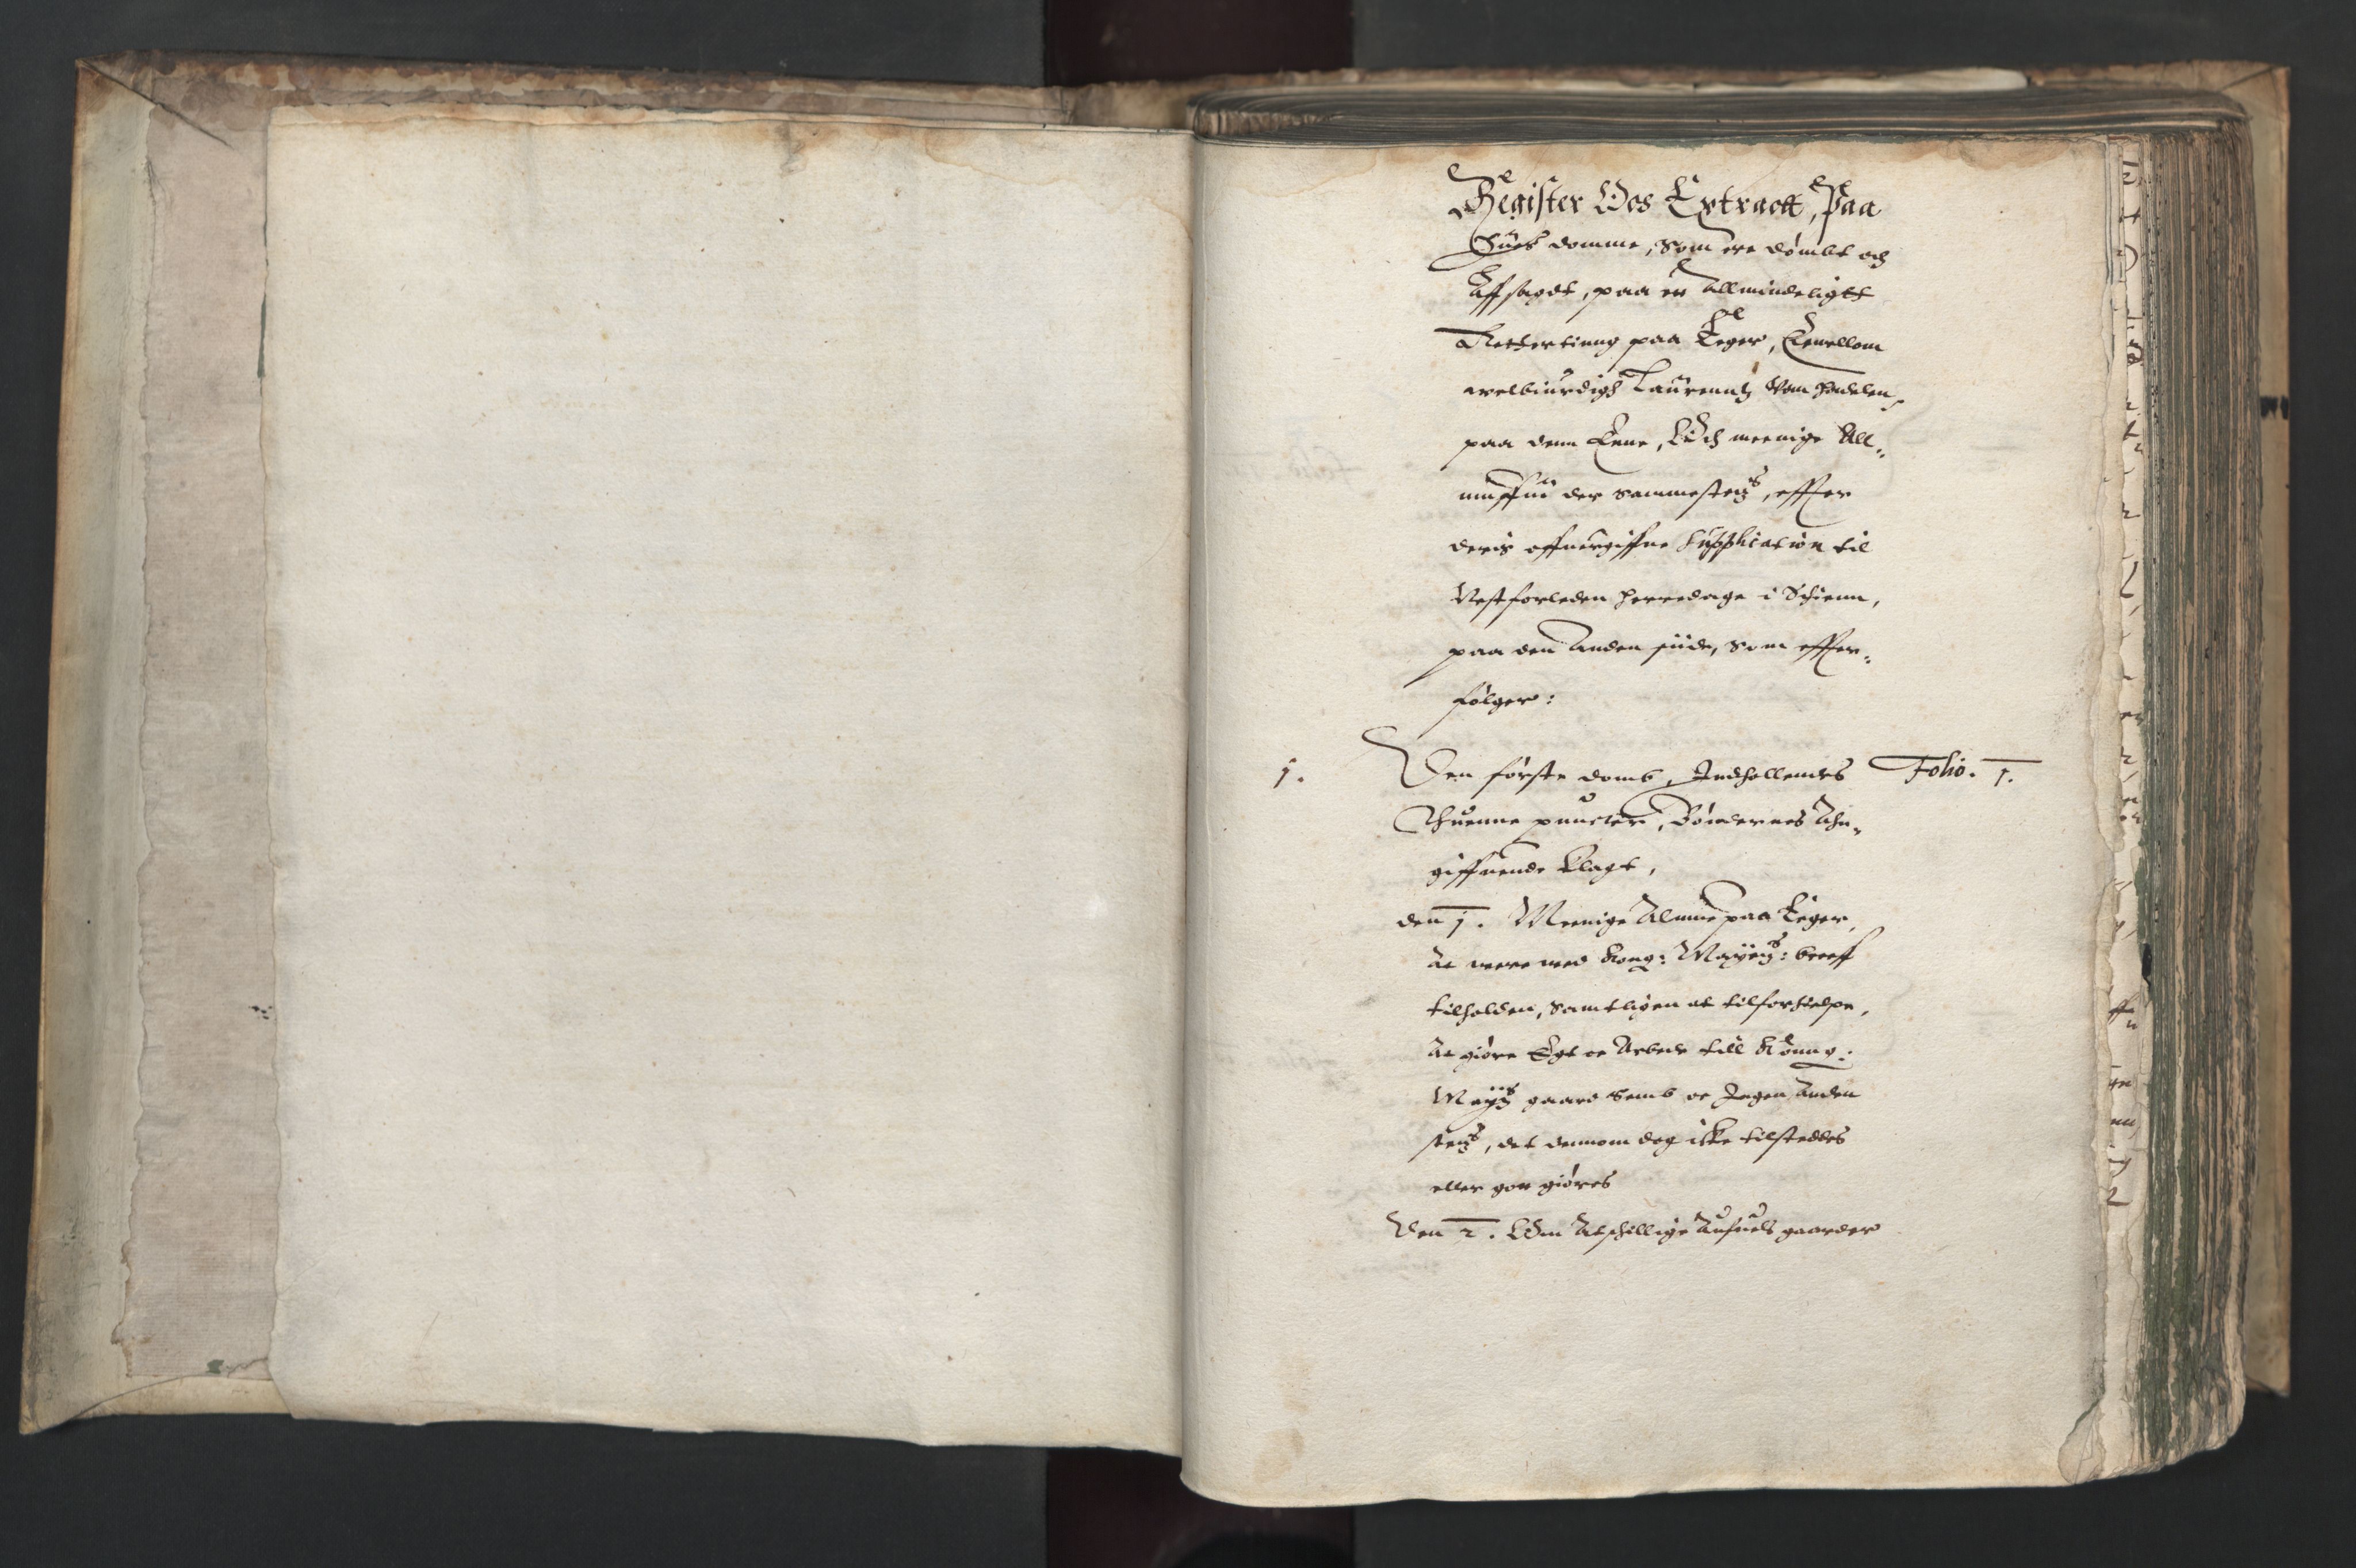 Herredagen 1539-1664  (Kongens Retterting), RA/EA-2882/A/L0010: Dombok, 1613